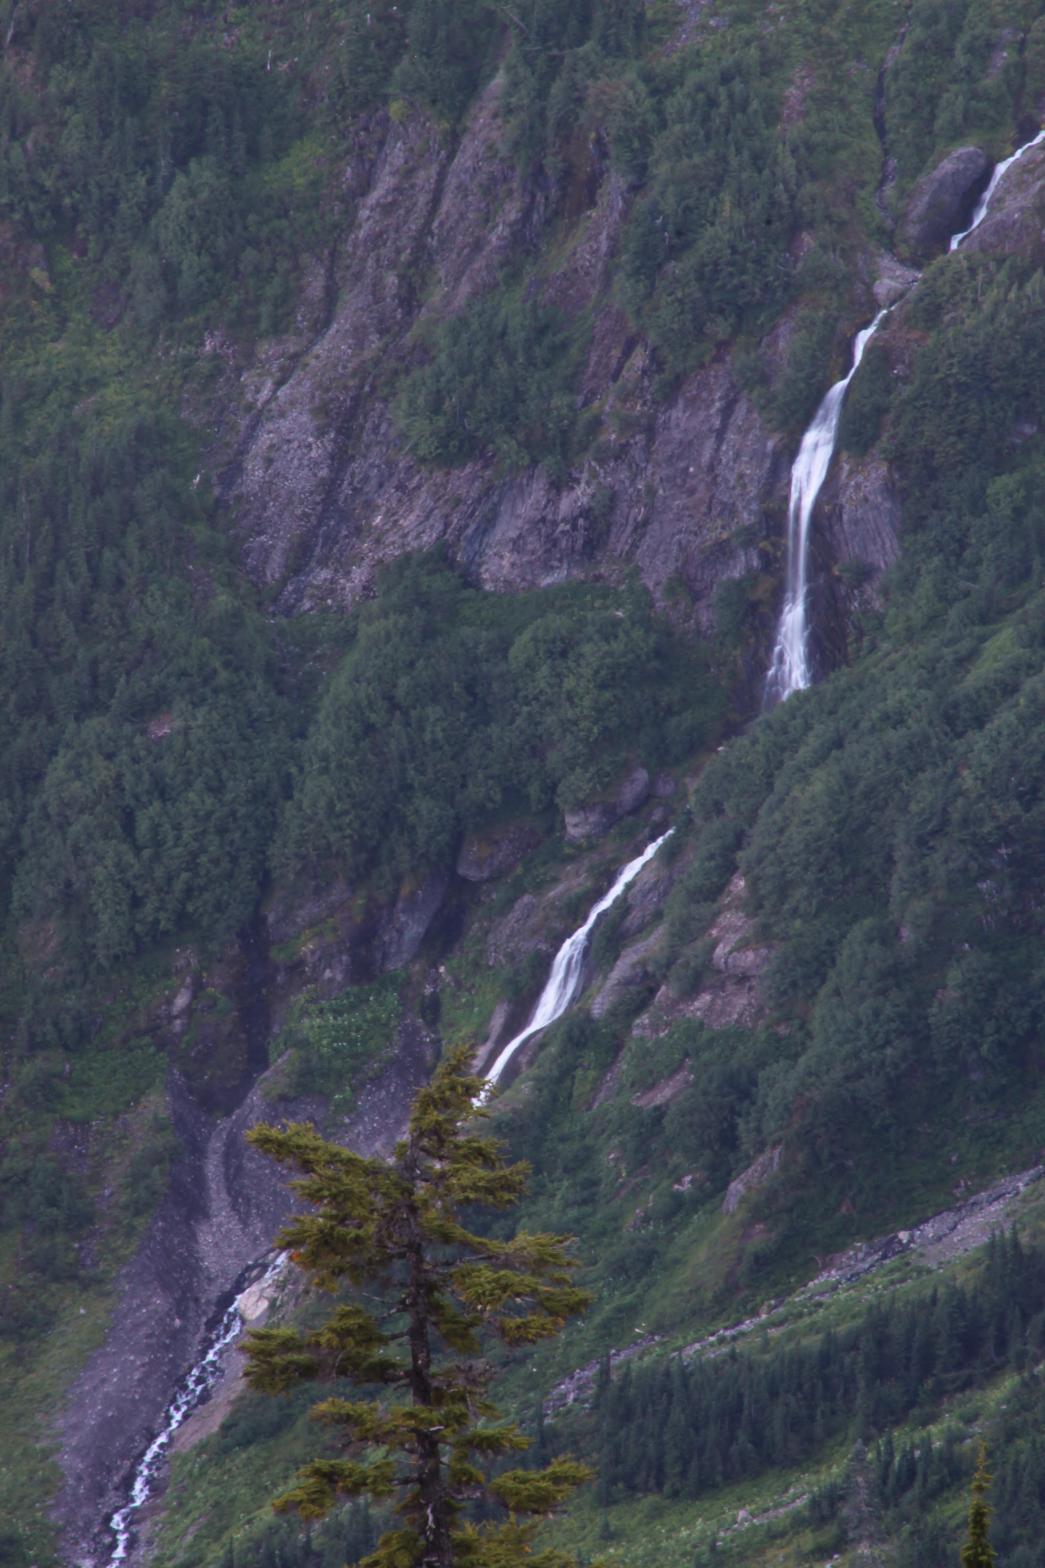 Right segment of Avalanche Gorge Falls